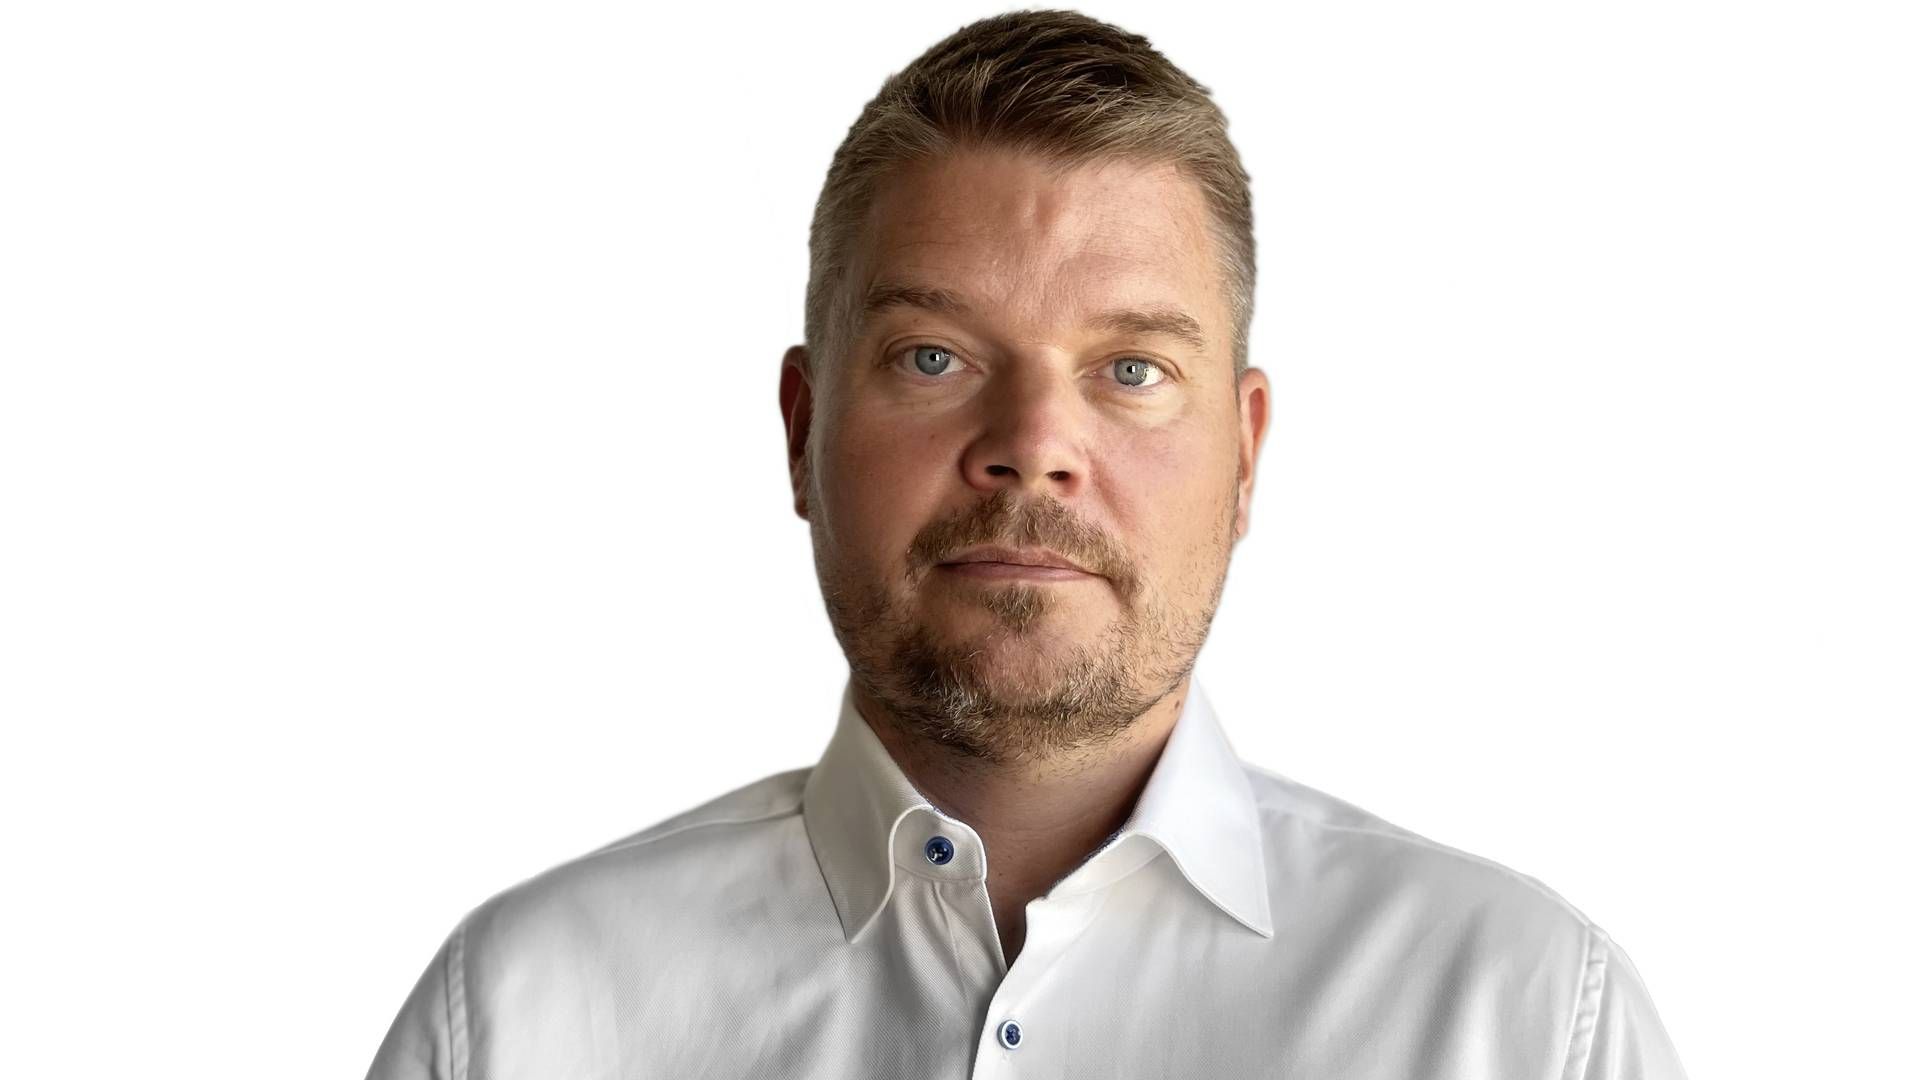 FORLATER: Niklas Tyrén, økonomidirektør i Kjell Group, forlater selskapet. | Foto: Kjell & Company